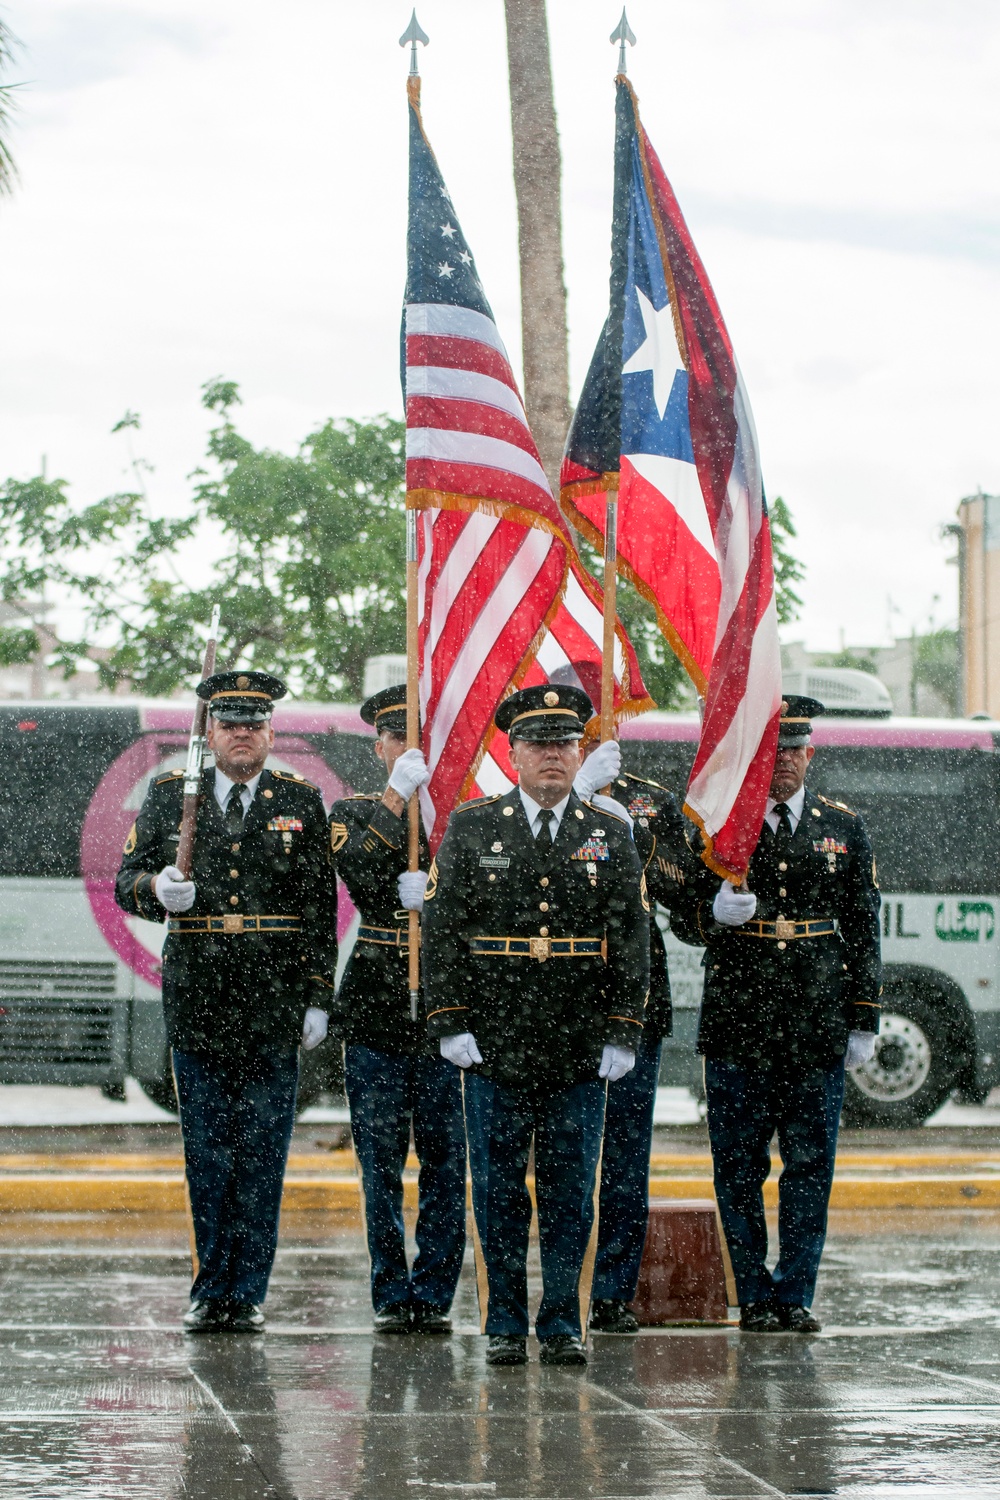 Veterans Day Celebration at Catanos, Puerto Rico